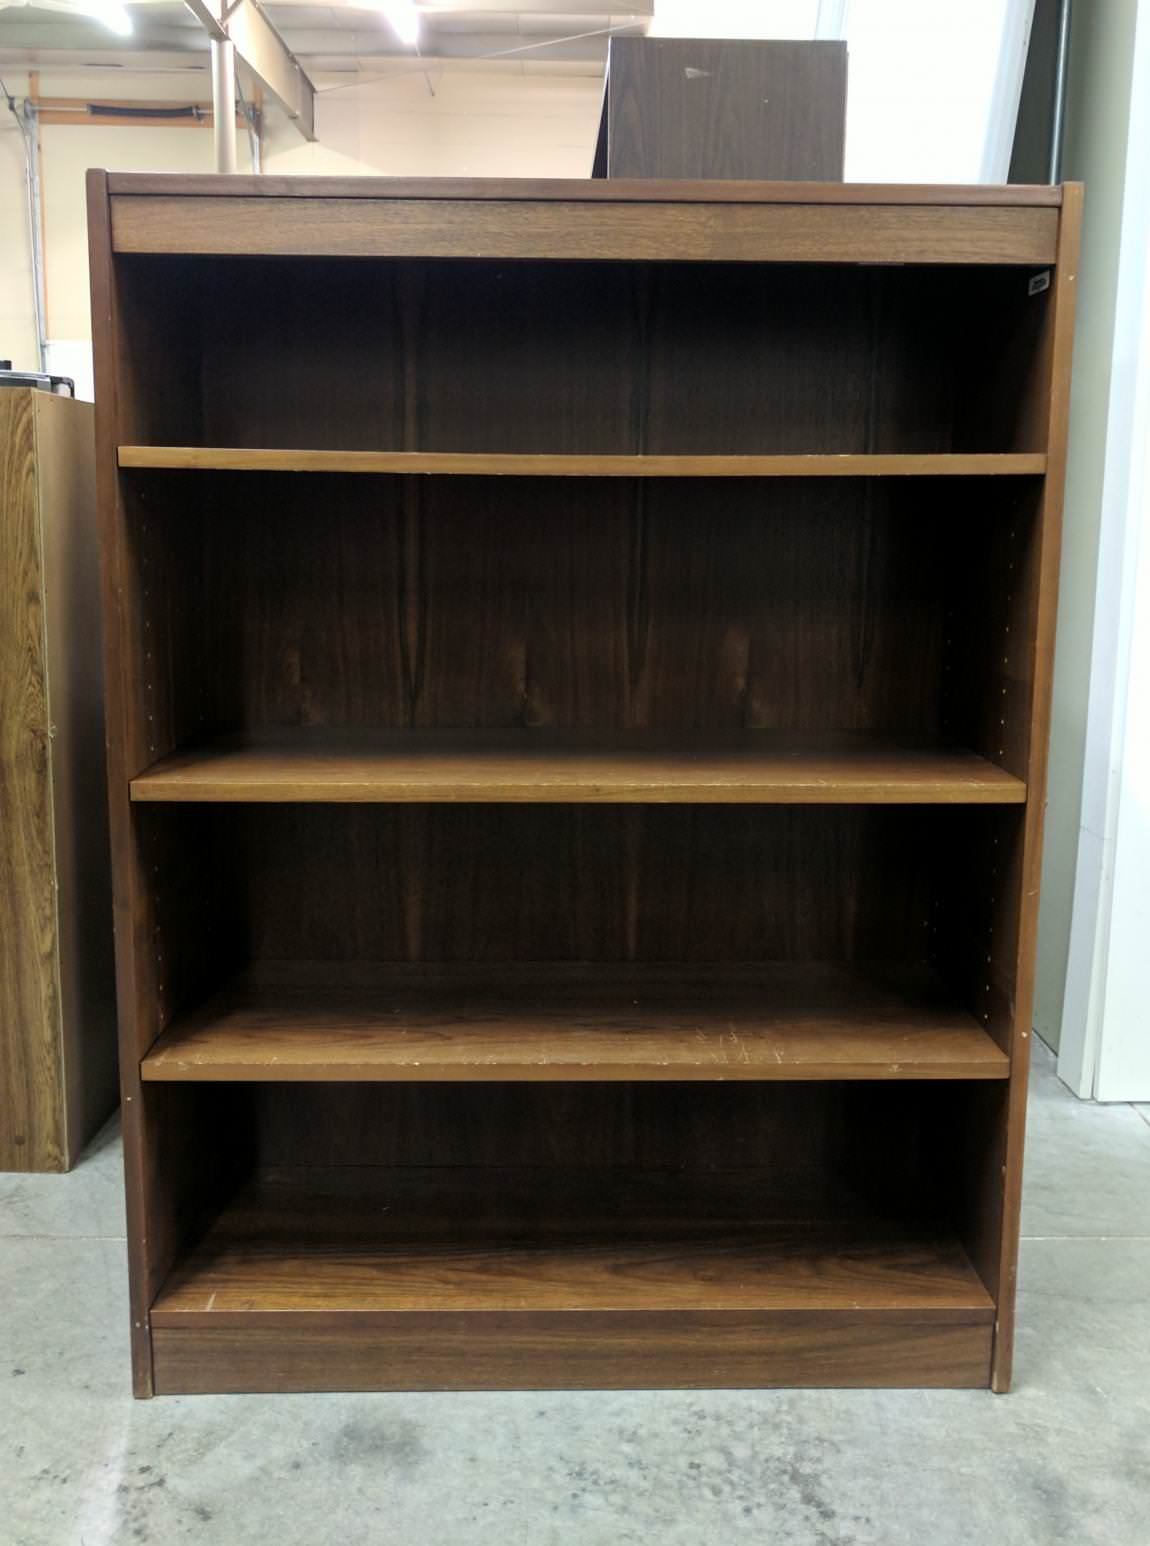 Wood Bookshelf with Walnut Finish - 36 Inch Wide